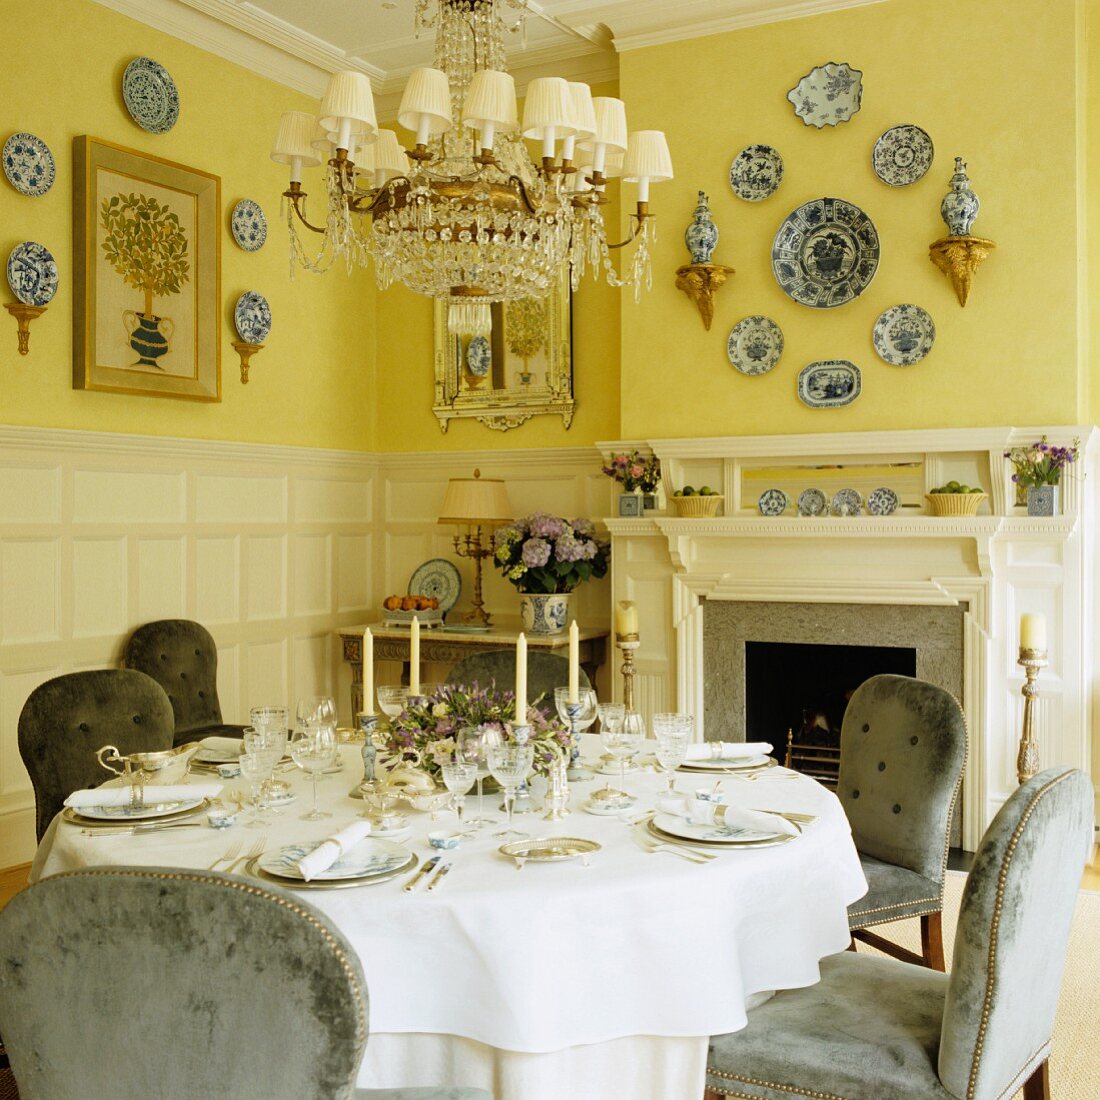 Festlich gedeckter Tisch vor offenem Kamin und an gelb getönten Wänden befestigte Deko-Teller